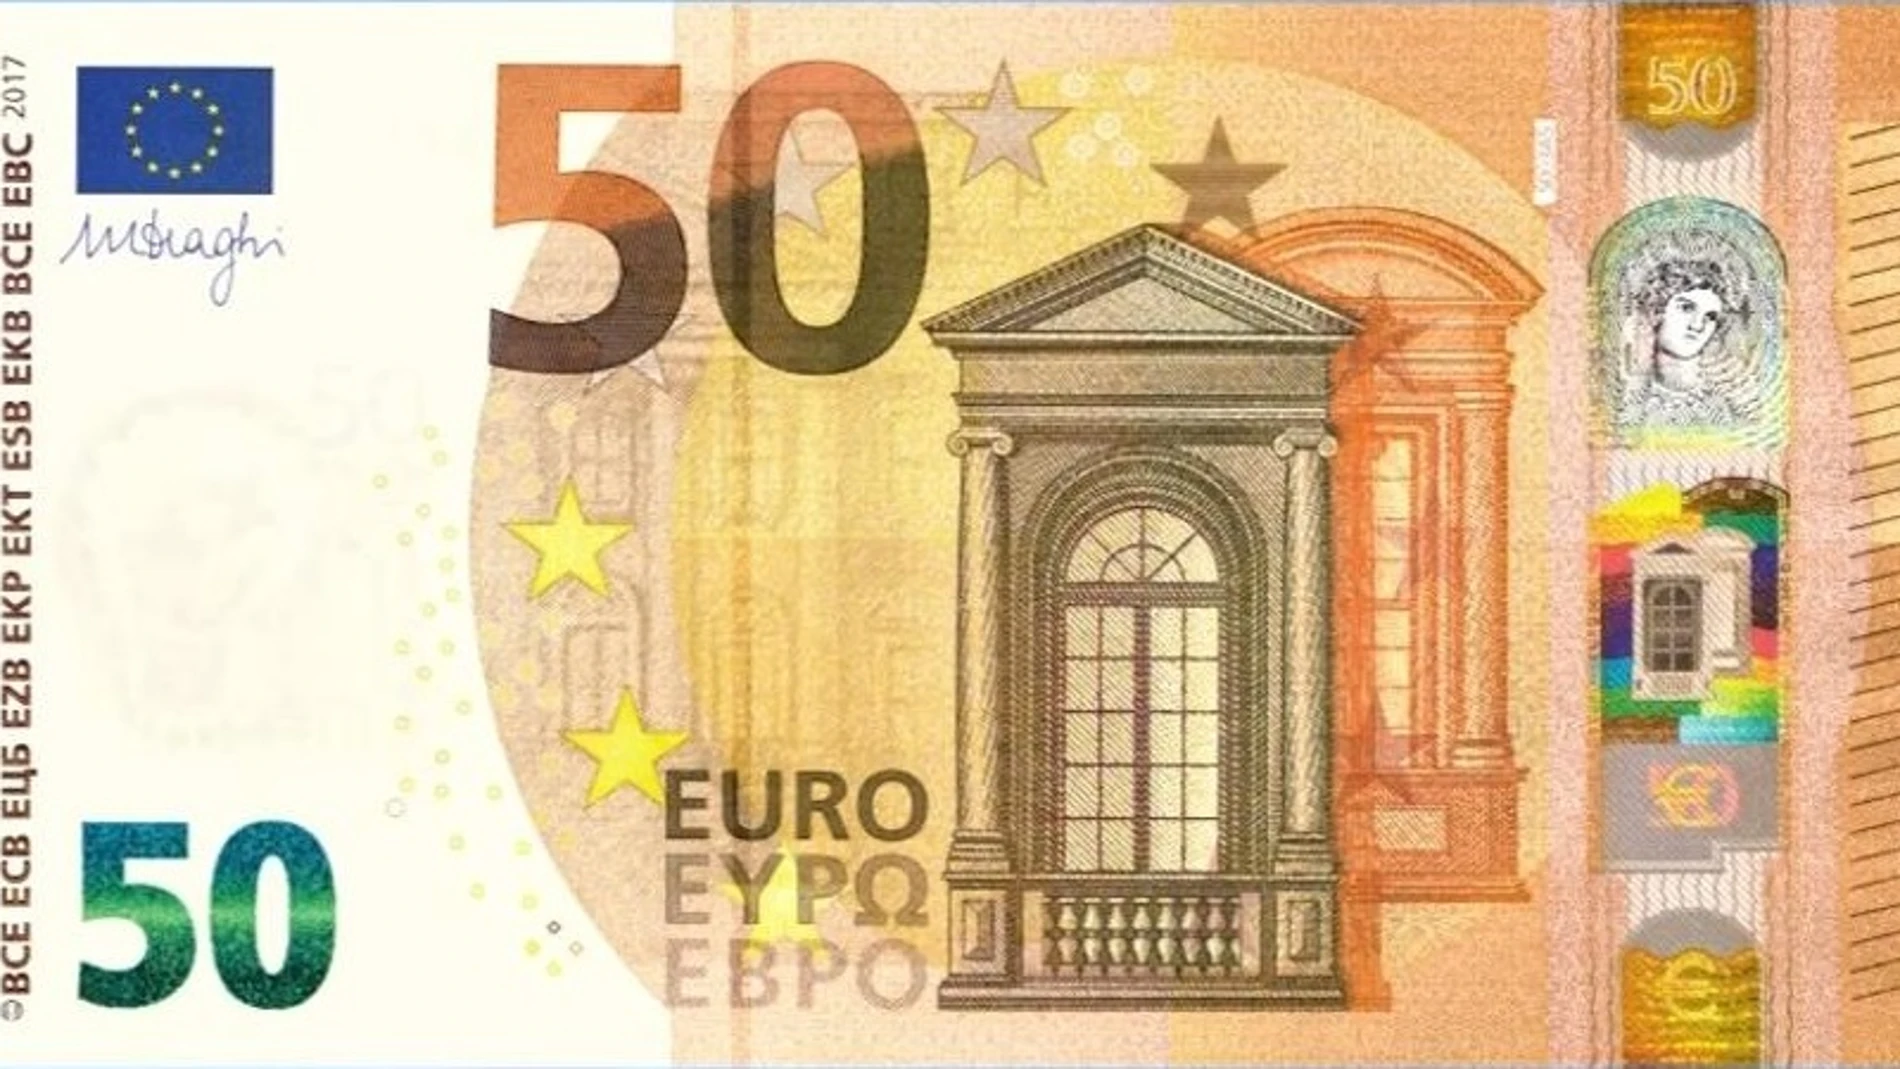 Nuevo billete de 10 euros entra en circulación este martes, Internacional